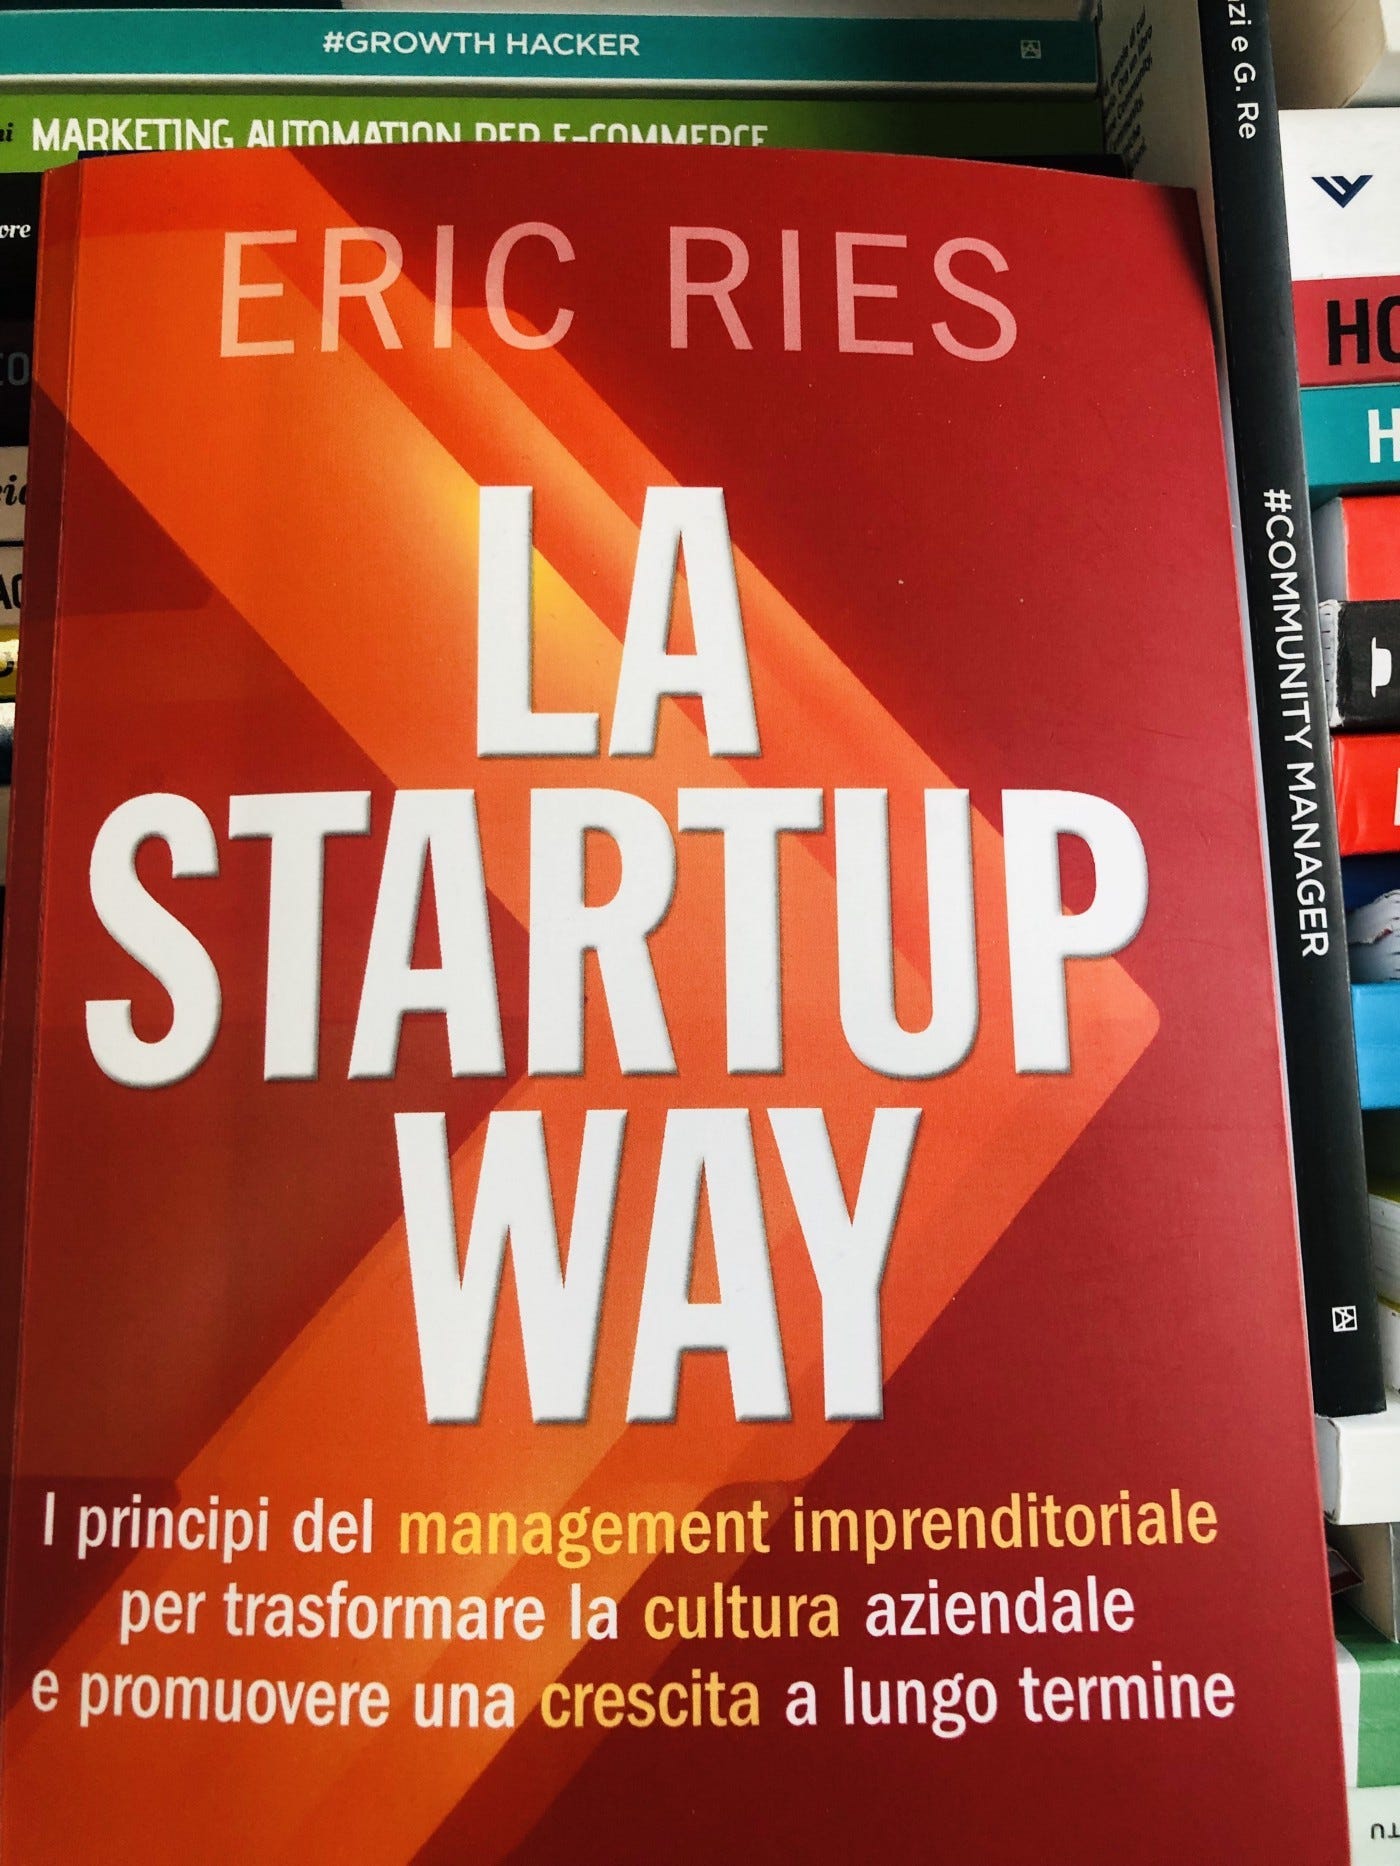 immagine di copertina del libro di Eric Ries — La startup Way